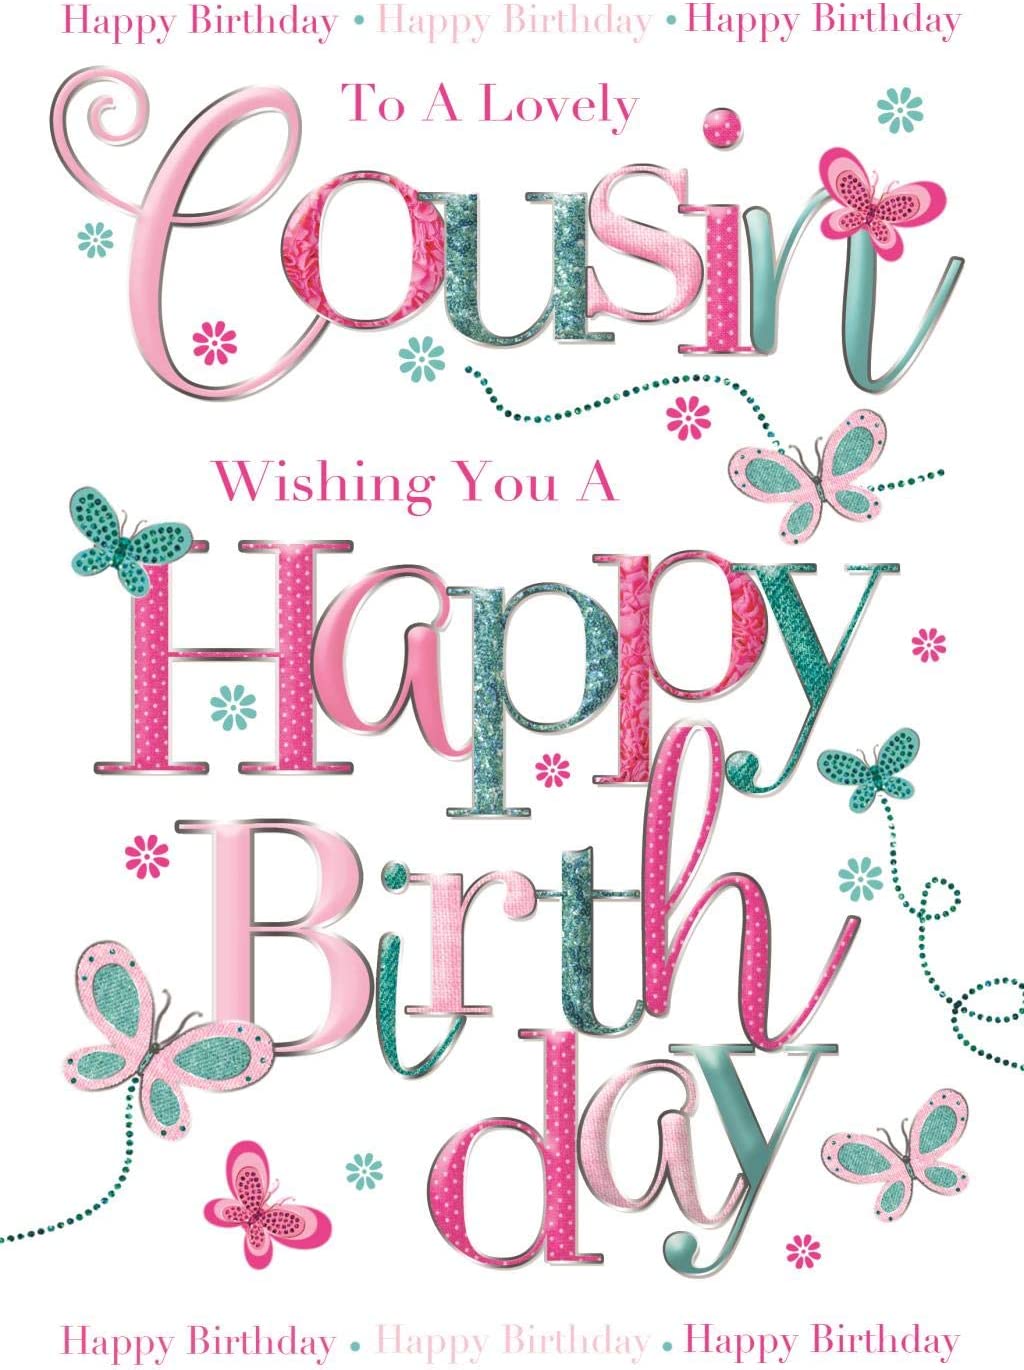 Cousin Birthday Card - A Lovely Word Art